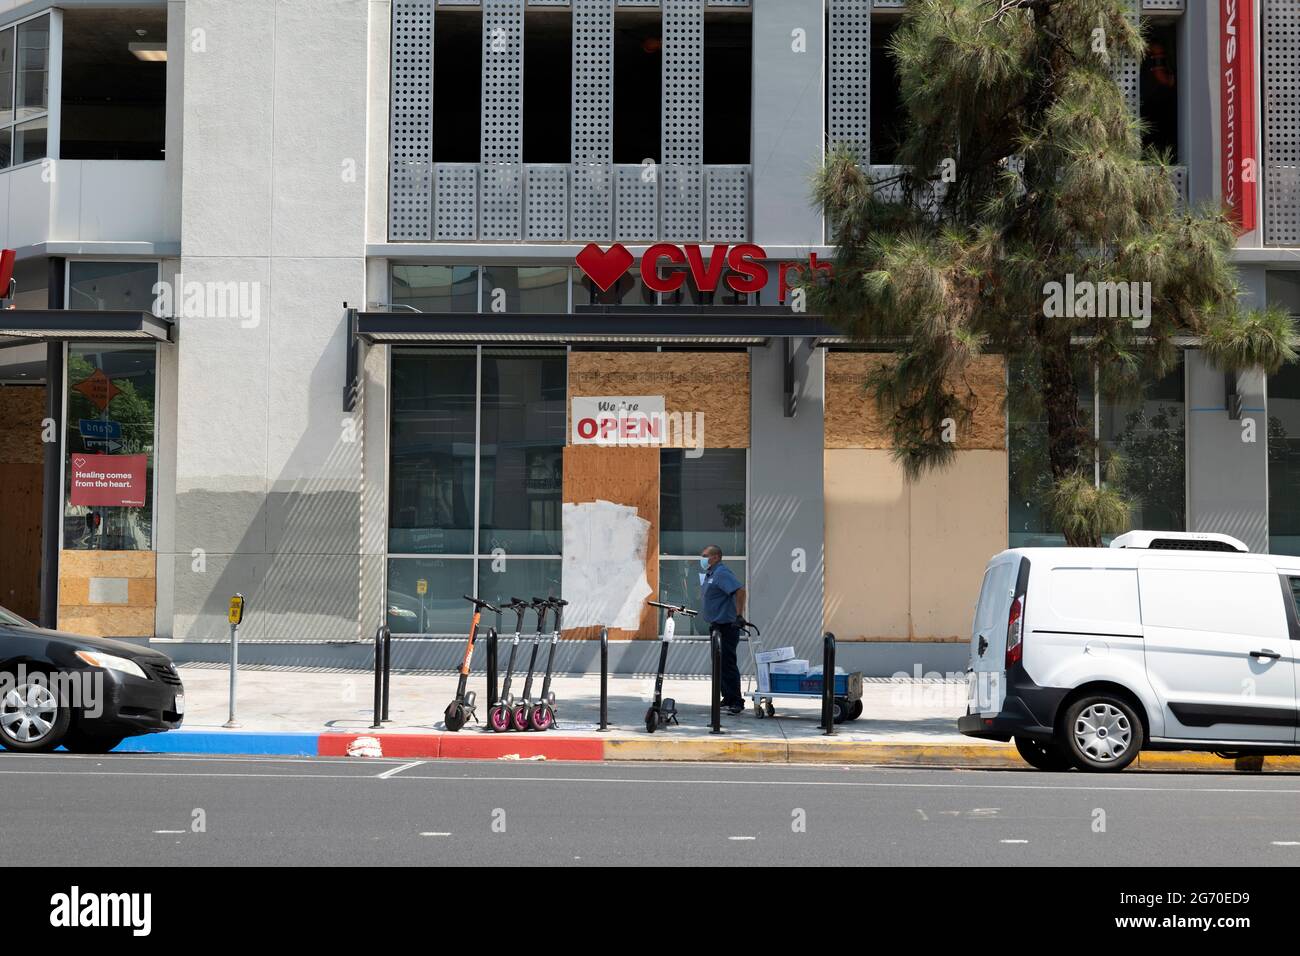 Los Angeles, CA USA - 20 août 2020: La pharmacie CVS est montée en boarp avec un garde de sécurité après de longues vies noires des émeutes et des pillages dans le délendemain Banque D'Images